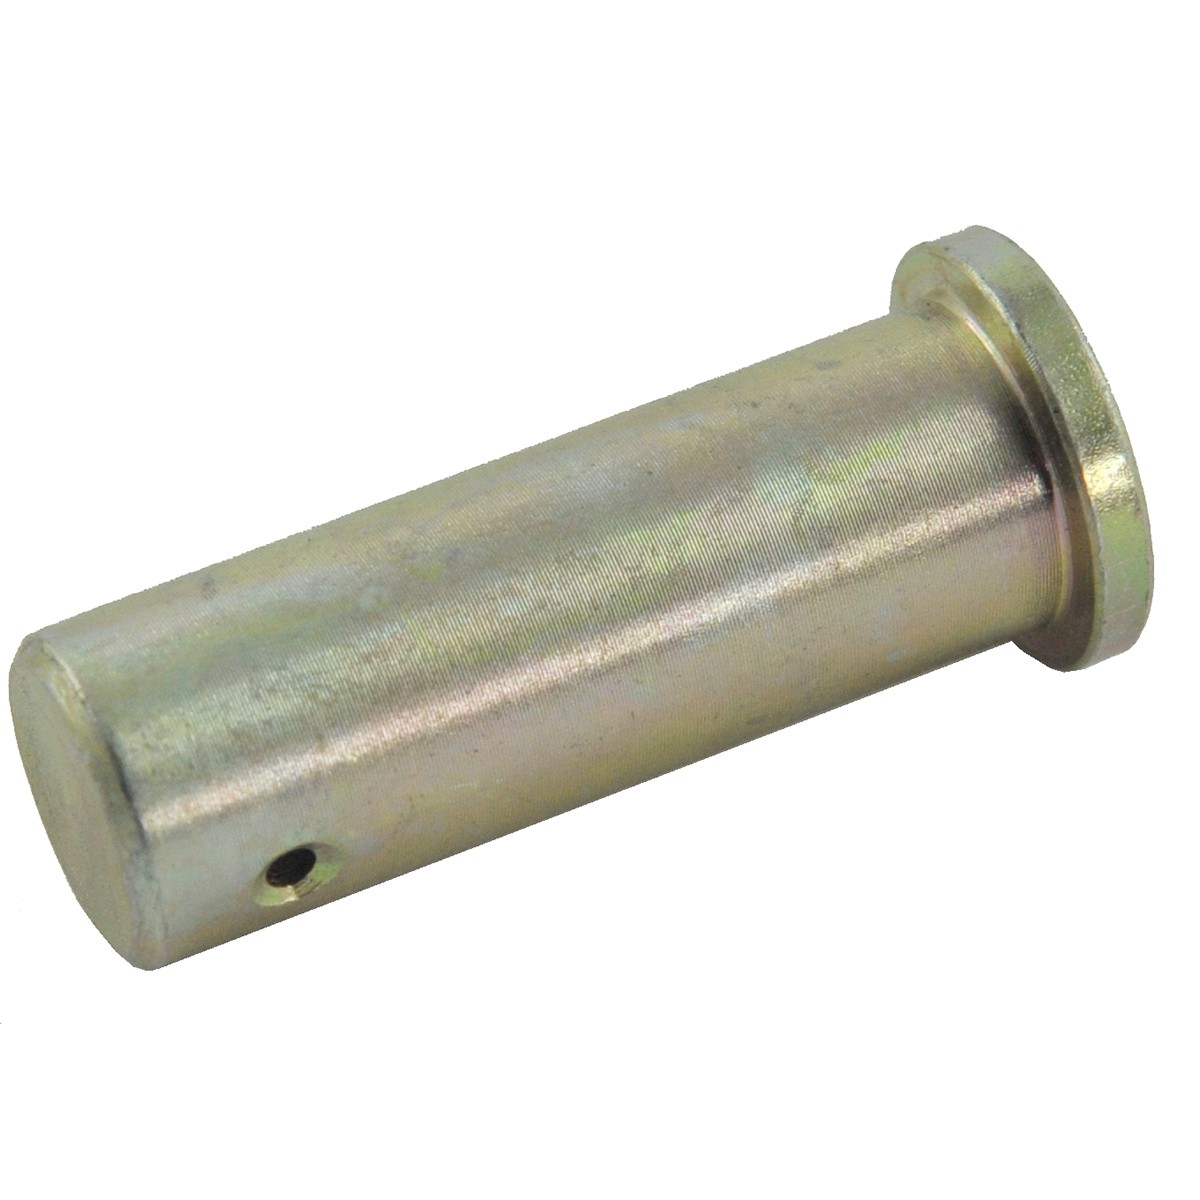 Three-point linkage pin / 16 x 38 mm / Cat I / LS MT 1.25 / LS XJ 25 / TRG896 / 40194154